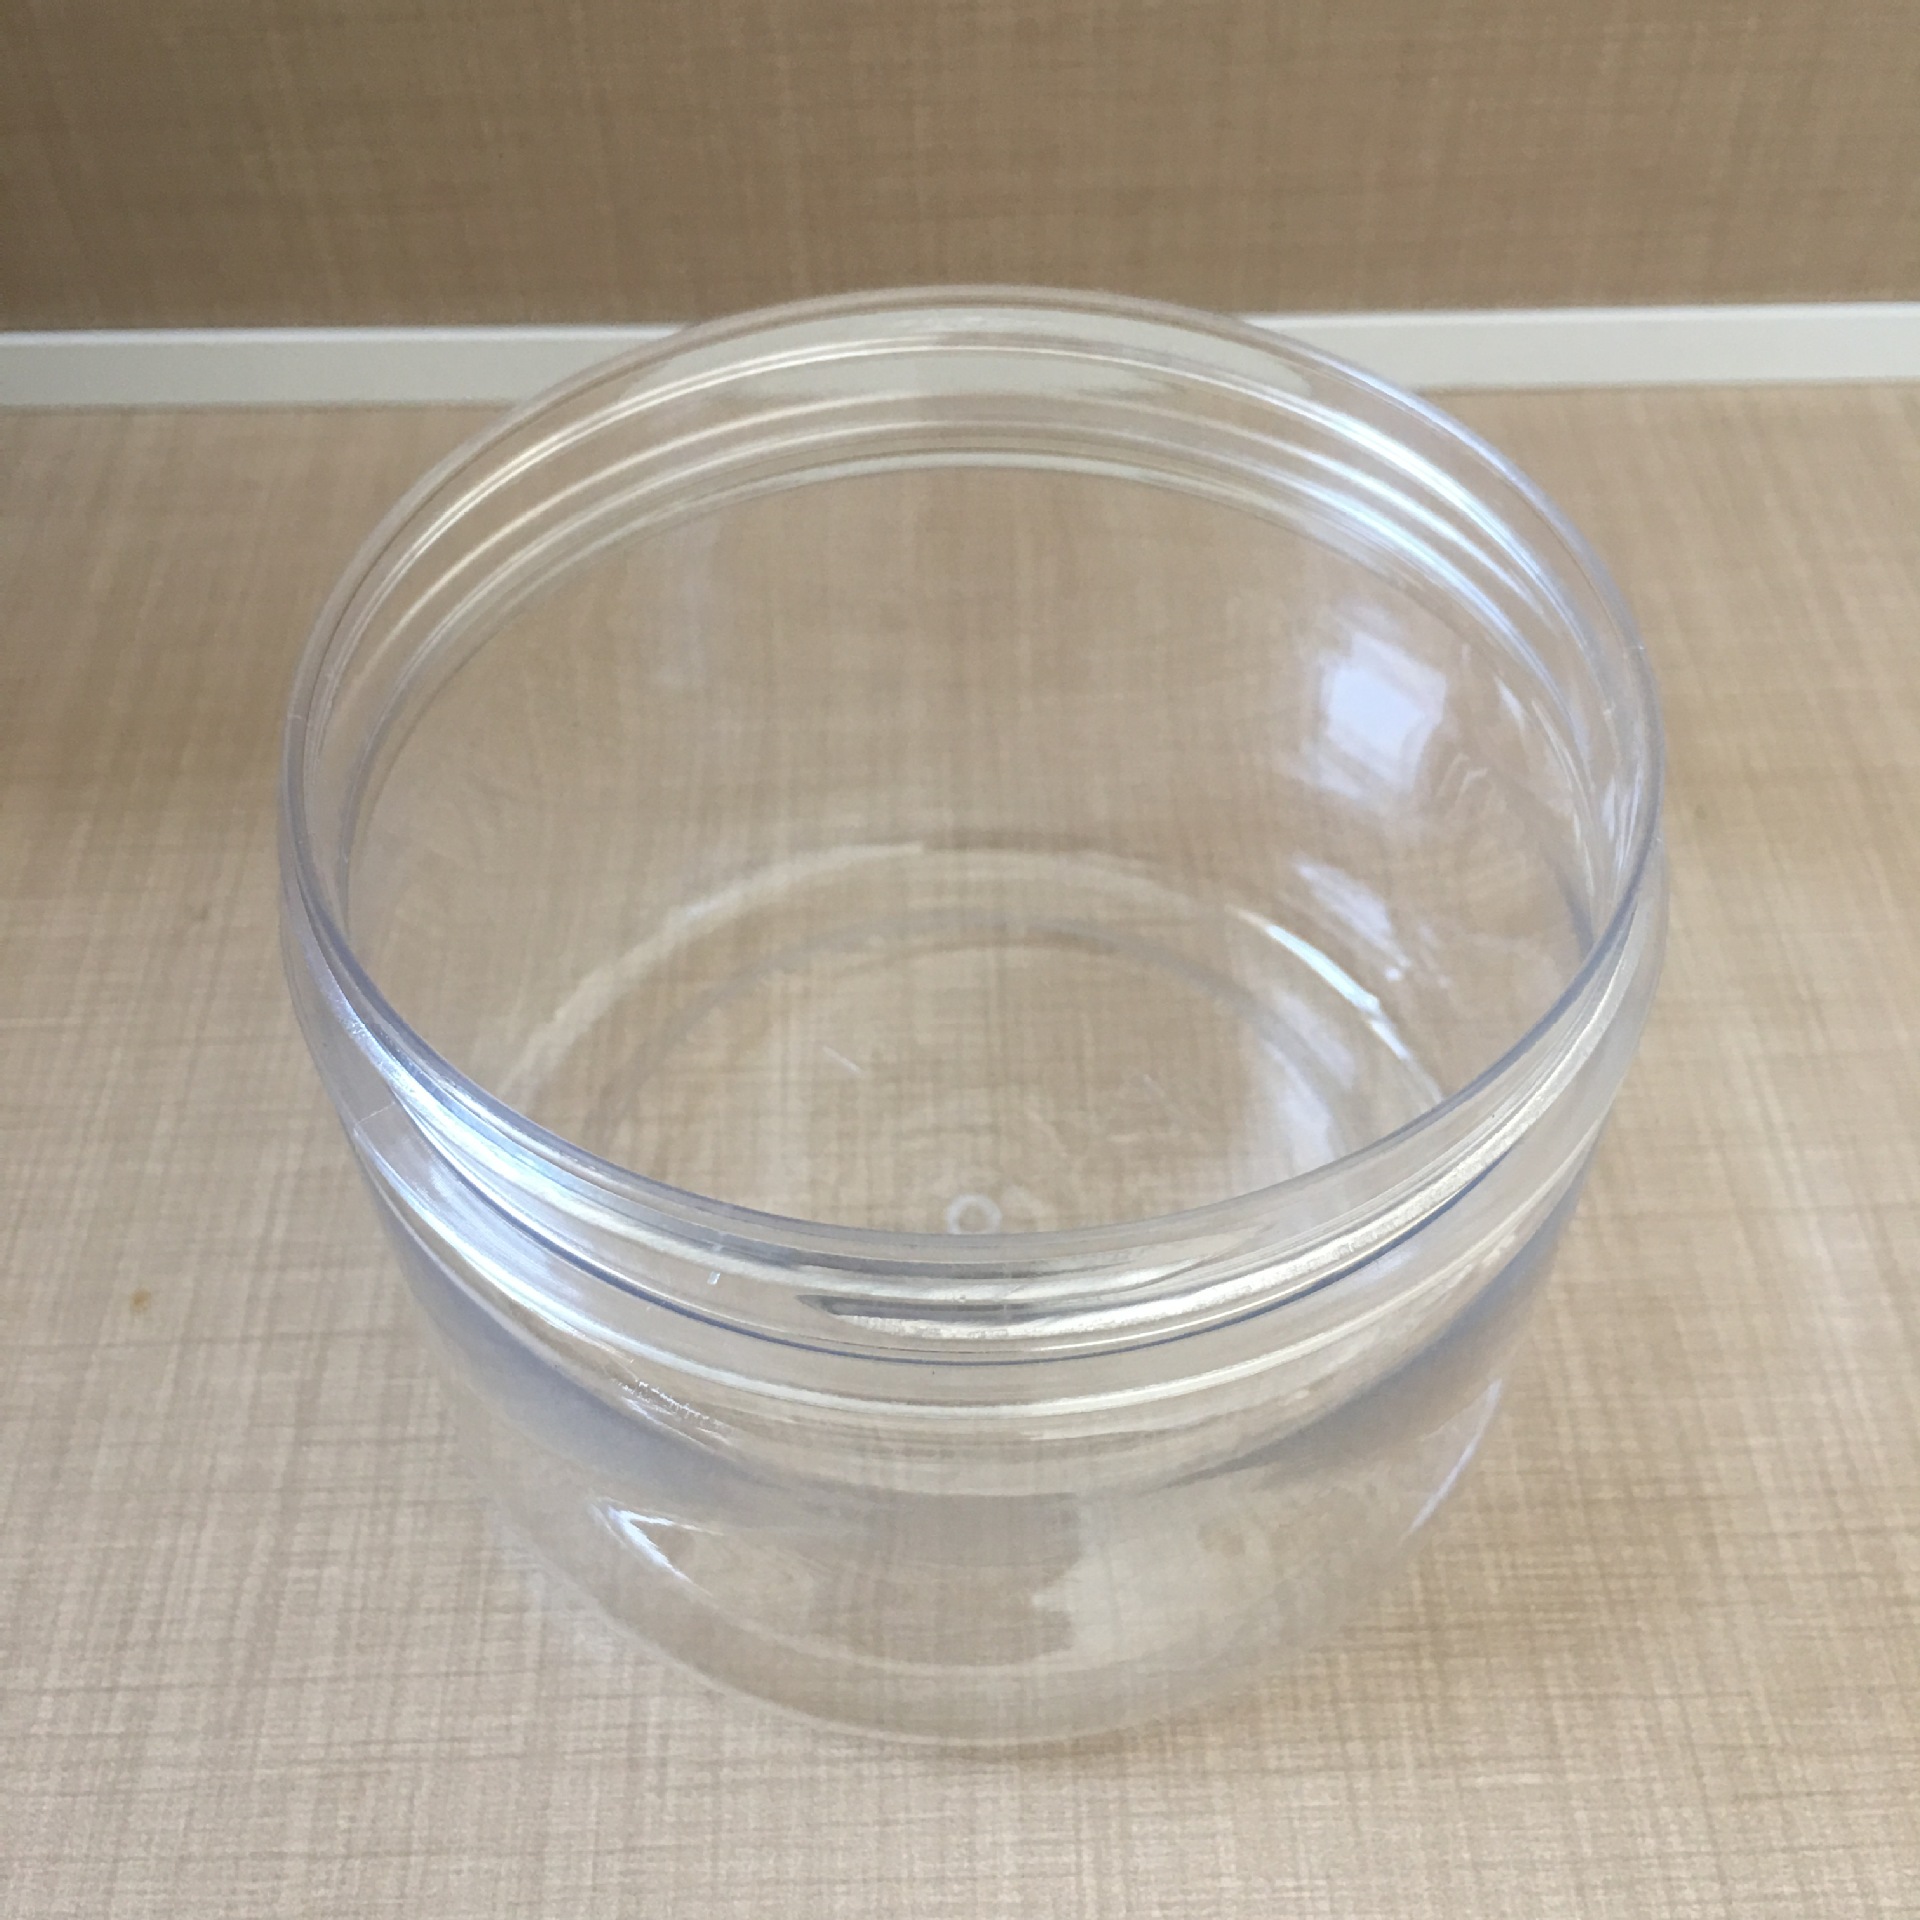 厂家直销pet塑料罐食品塑料罐医用塑料罐包装罐现货供应价格优惠示例图6